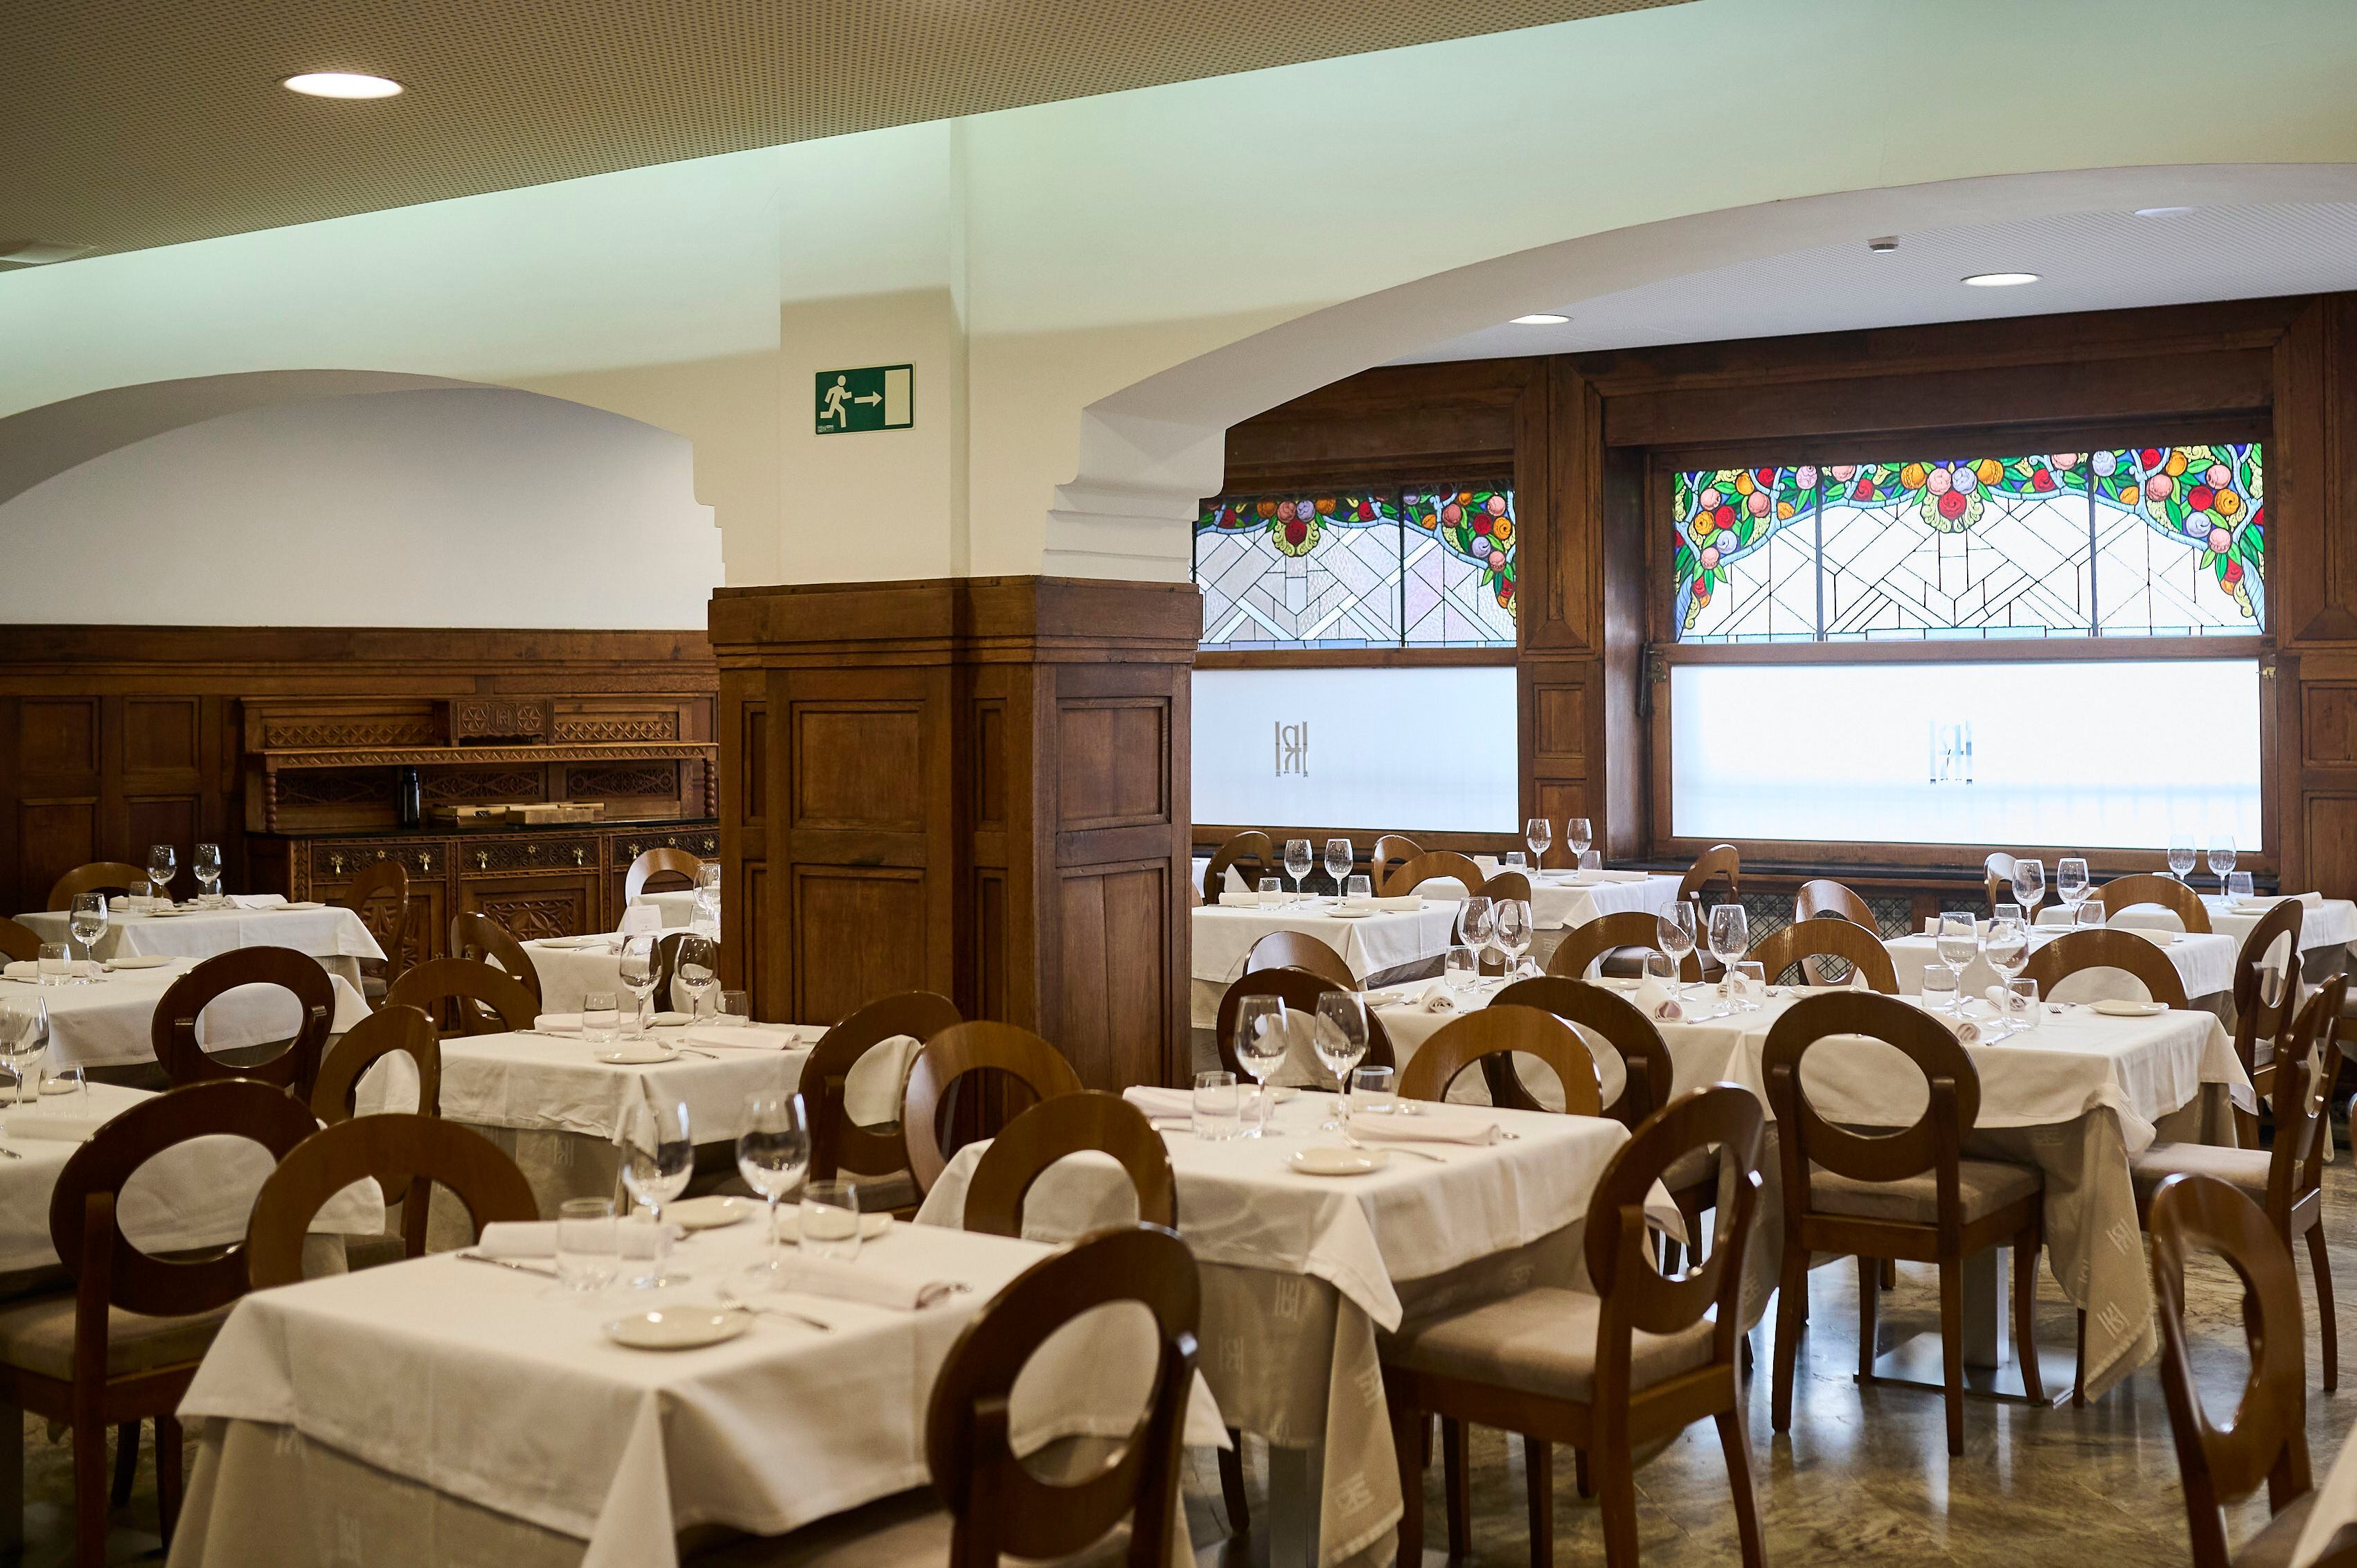 Las molduras de madera traídas de San Sebastián en 1936 y las vidrieras son las señas de identidad de la sala principal del restaurante.